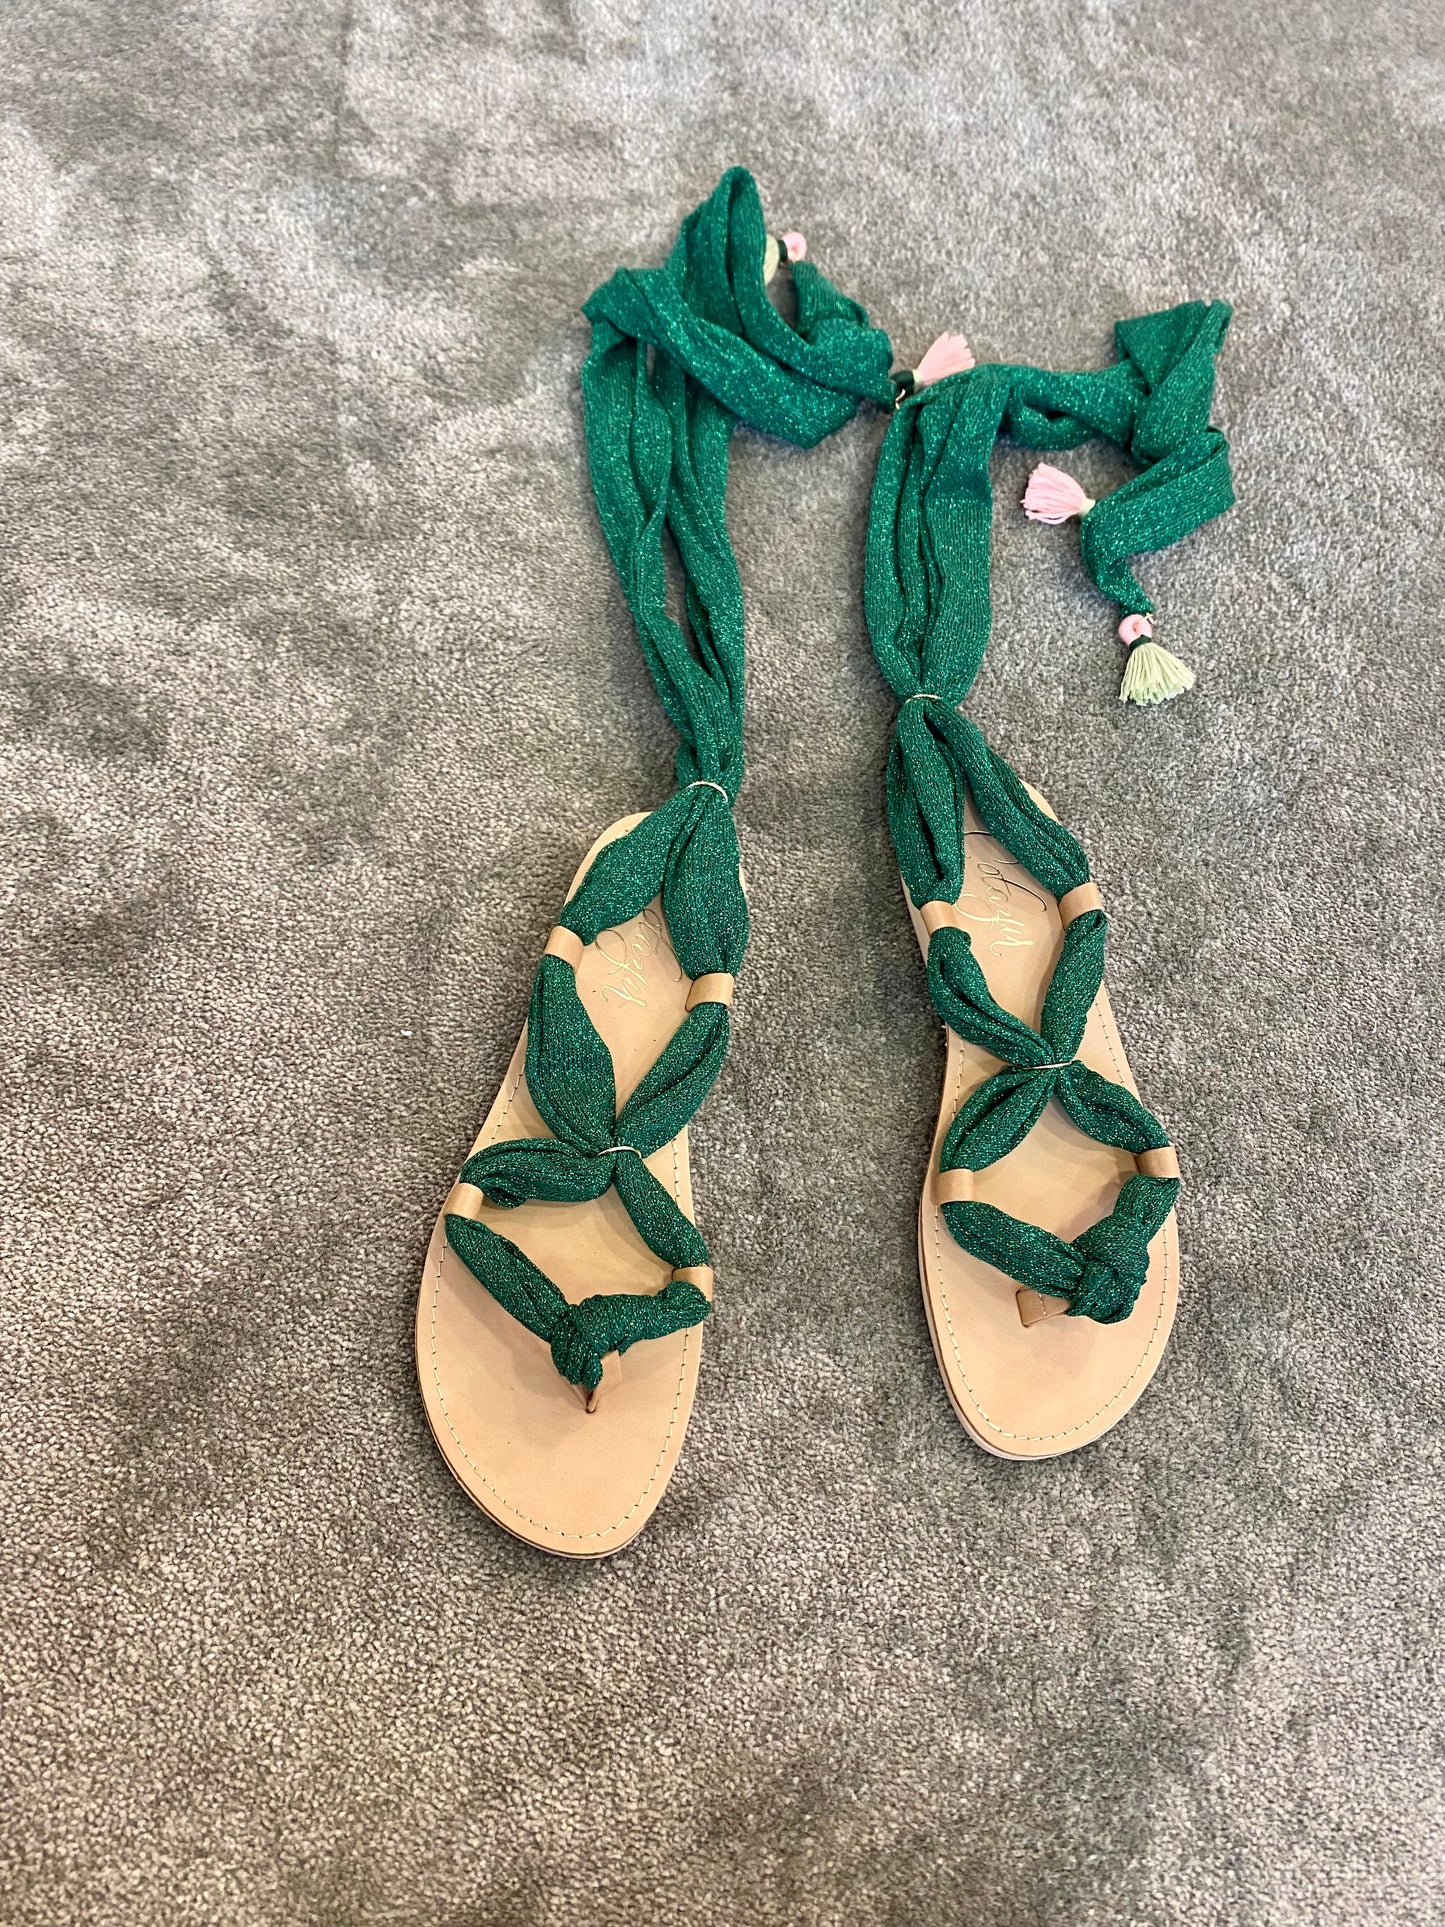 Sandali verde glitter con nappine